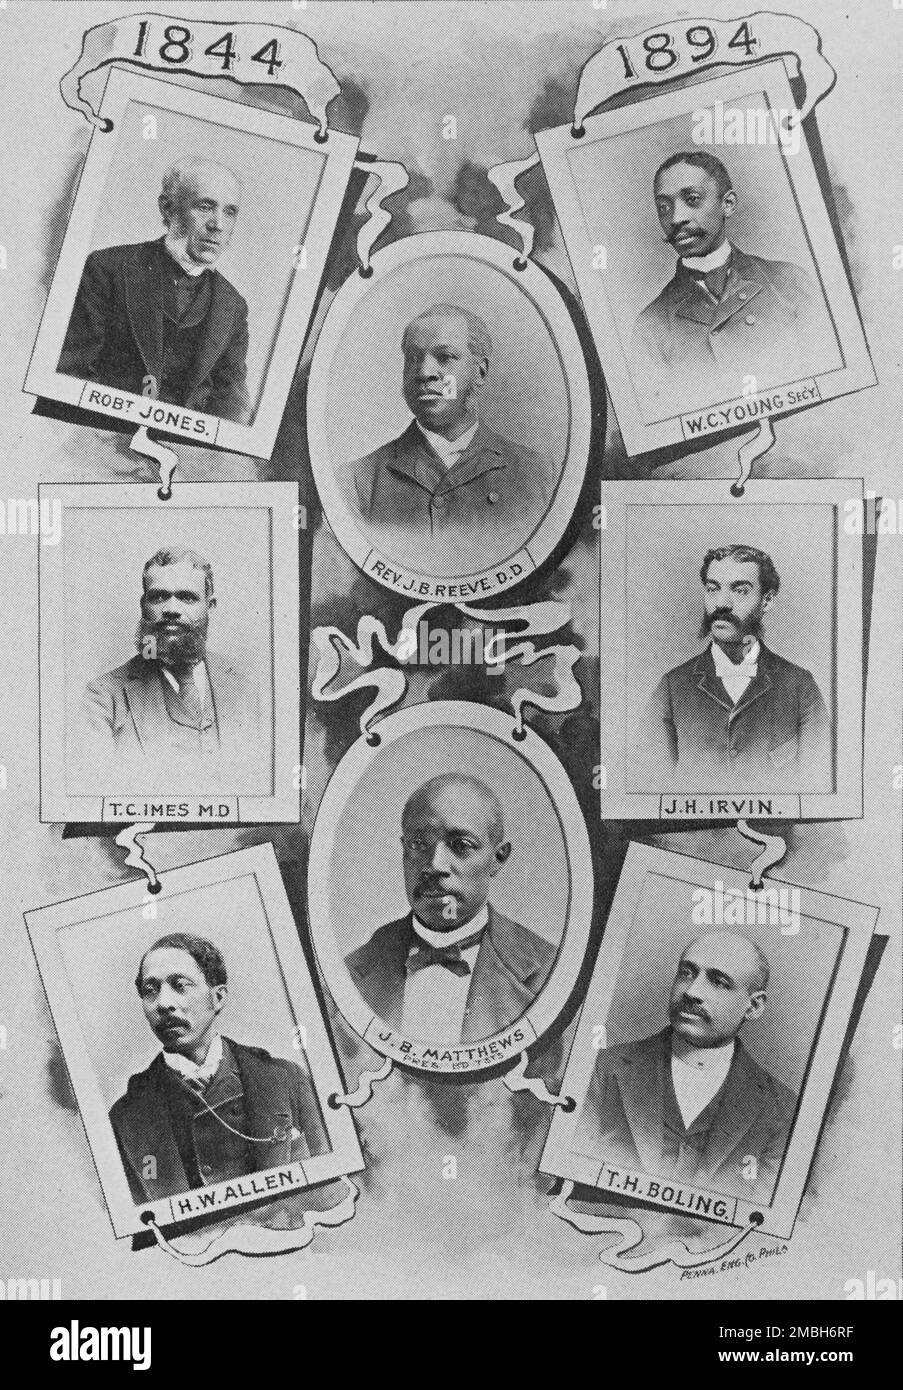 Église presbytérienne centrale, Philadelphie ; Robt. Jones; W. C. Young; rév. J. B. Reeve, D.D.; T. C. IMES, M.D.; J. H. Irvin; J. B. Matthews; H. W. Allen; T. H. Boling, 1894. Banque D'Images